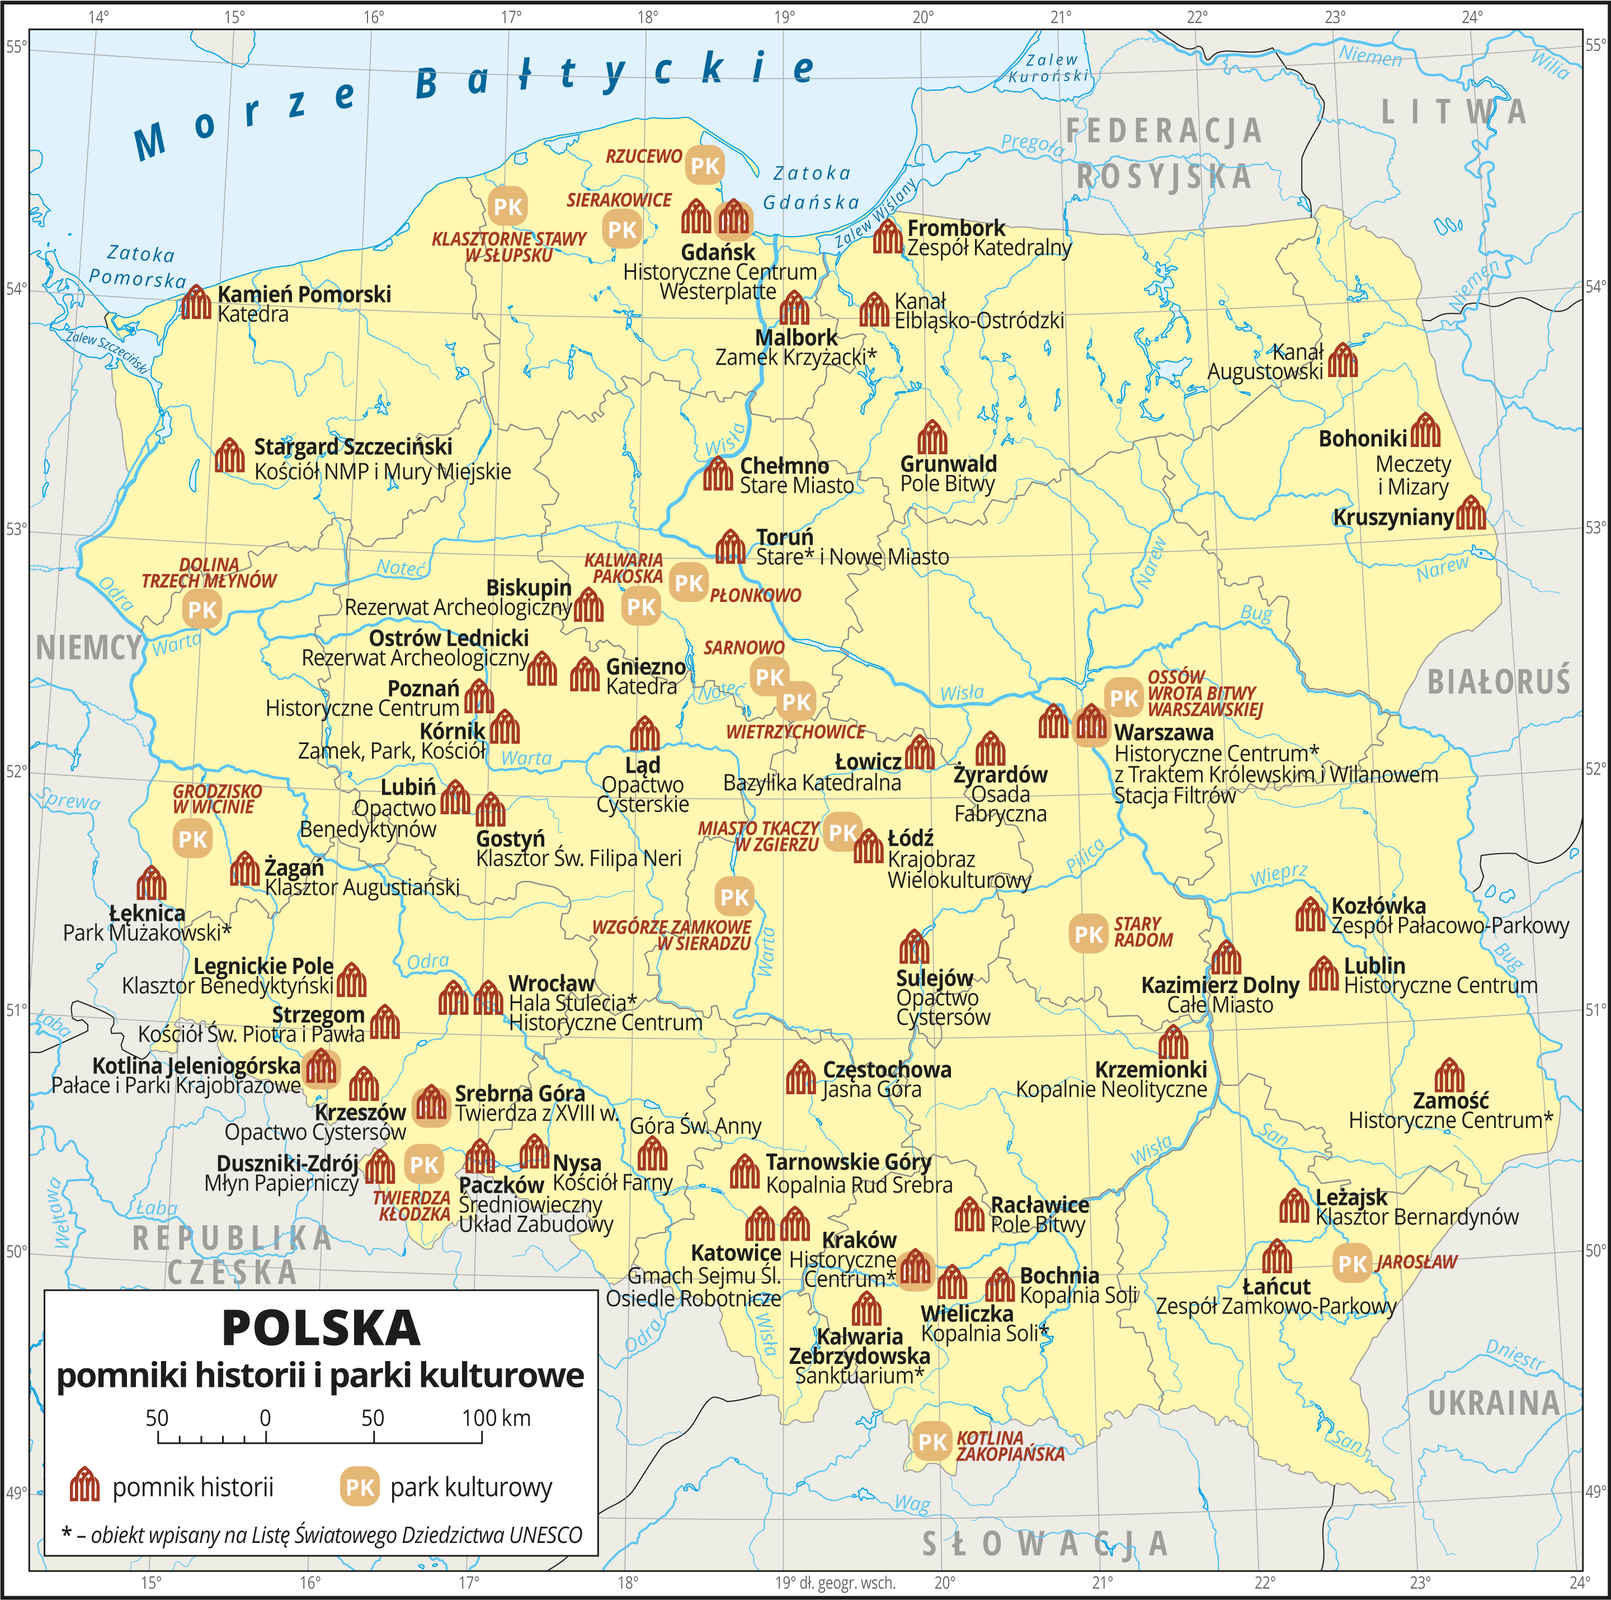 Ilustracja przedstawia mapę Polski. Obszar Polski przedstawiony jest kolorem żółtym. Granice Polski i granice województw oznaczono szarymi liniami. Opisano państwa sąsiadujące. Na mapie za pomocą czerwonej sygnatury budynku przedstawiono pomniki historii w Polsce, a za pomocą sygnatury składającej się z liter PK na beżowym polu przedstawiono parki kulturowe. Pomników historii jest dużo i są umiejscowione równomiernie w obrębie mapy, ich występowanie pokrywa się z występowaniem miejscowości, najmniej sygnatur jest w rejonie pojezierzy. Pomniki historii opisane są w kolorze czarnym nazwą miejscowości, w której się znajdują i nazwą własną – na przykład: Malbork – Zamek Krzyżacki, Wieliczka – Kopalnia Soli. Obiekty wpisane na Listę Światowego Dziedzictwa UNESCO oznaczono gwiazdką. Parków kultury jest mniej, sygnatury najgęściej występują w centrum Polski, na przykład: Miasto Tkaczy w Zgierzu, Wzgórze Zamkowe w Sieradzu. Nazwy parków kultury opisano kolorem czerwonym. Mapa zawiera południki i równoleżniki, dookoła mapy w białej ramce opisano współrzędne geograficzne co jeden stopień. W legendzie na dole mapy objaśniono znaki użyte na mapie.